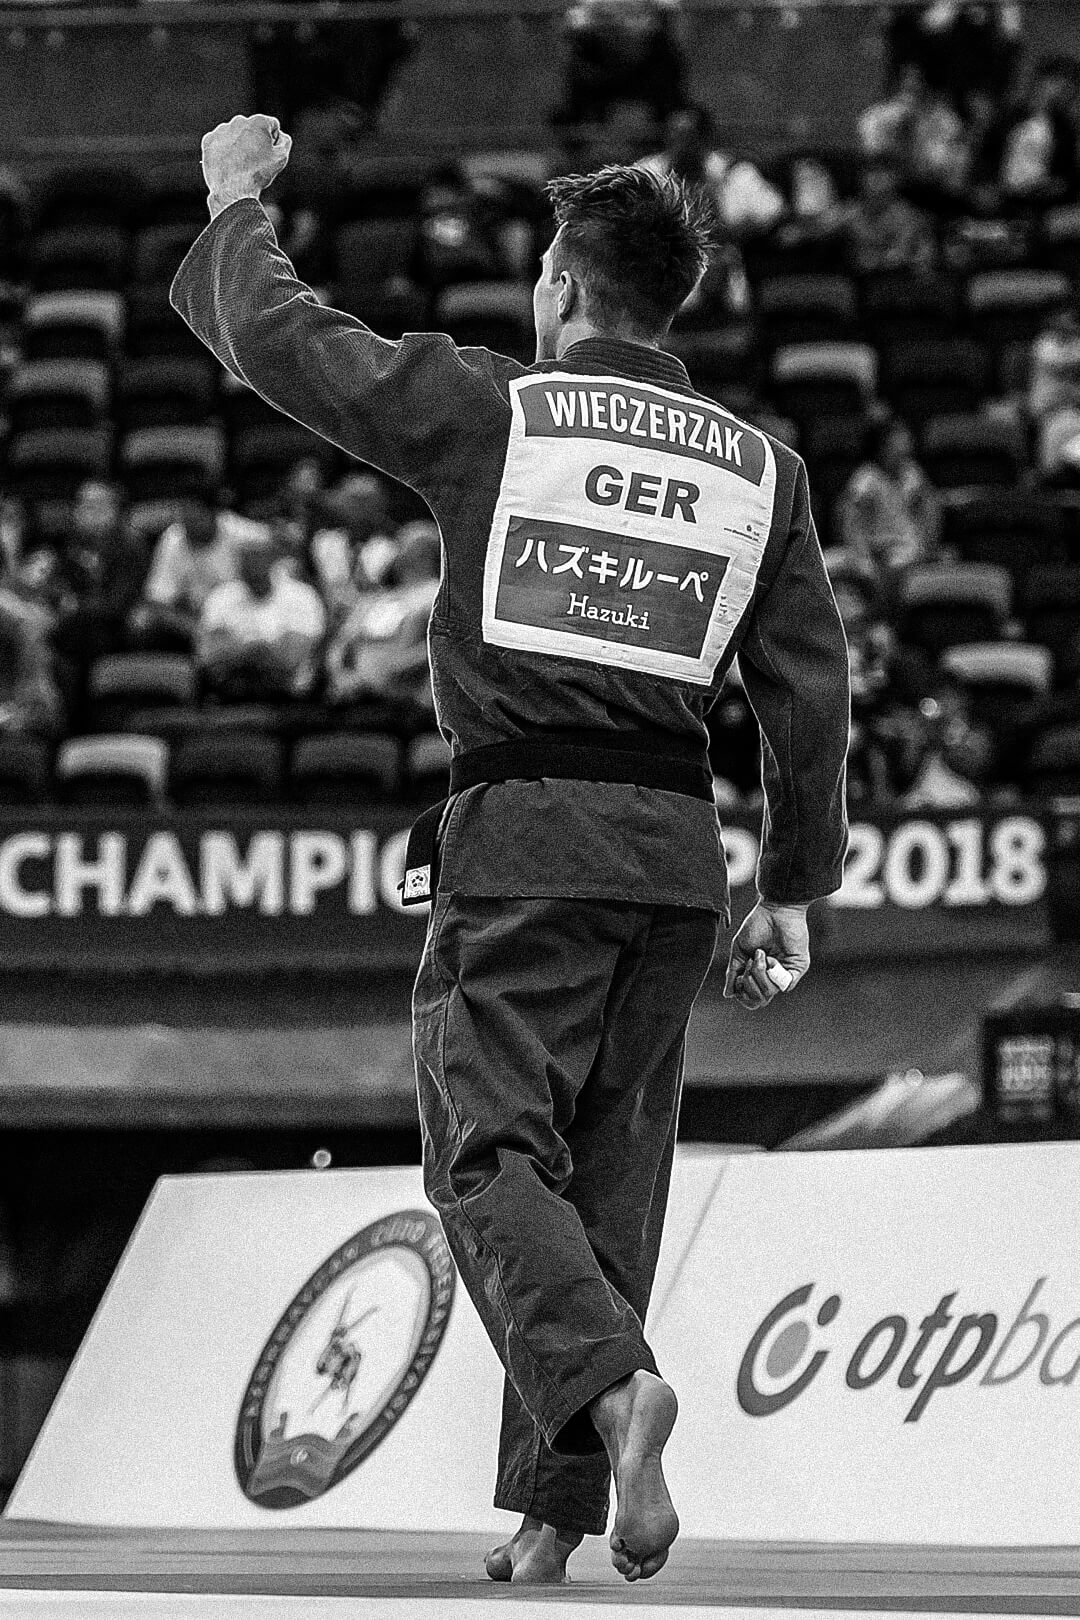 Judoka Alexander Wieczerzak feiert sich beim Sieg